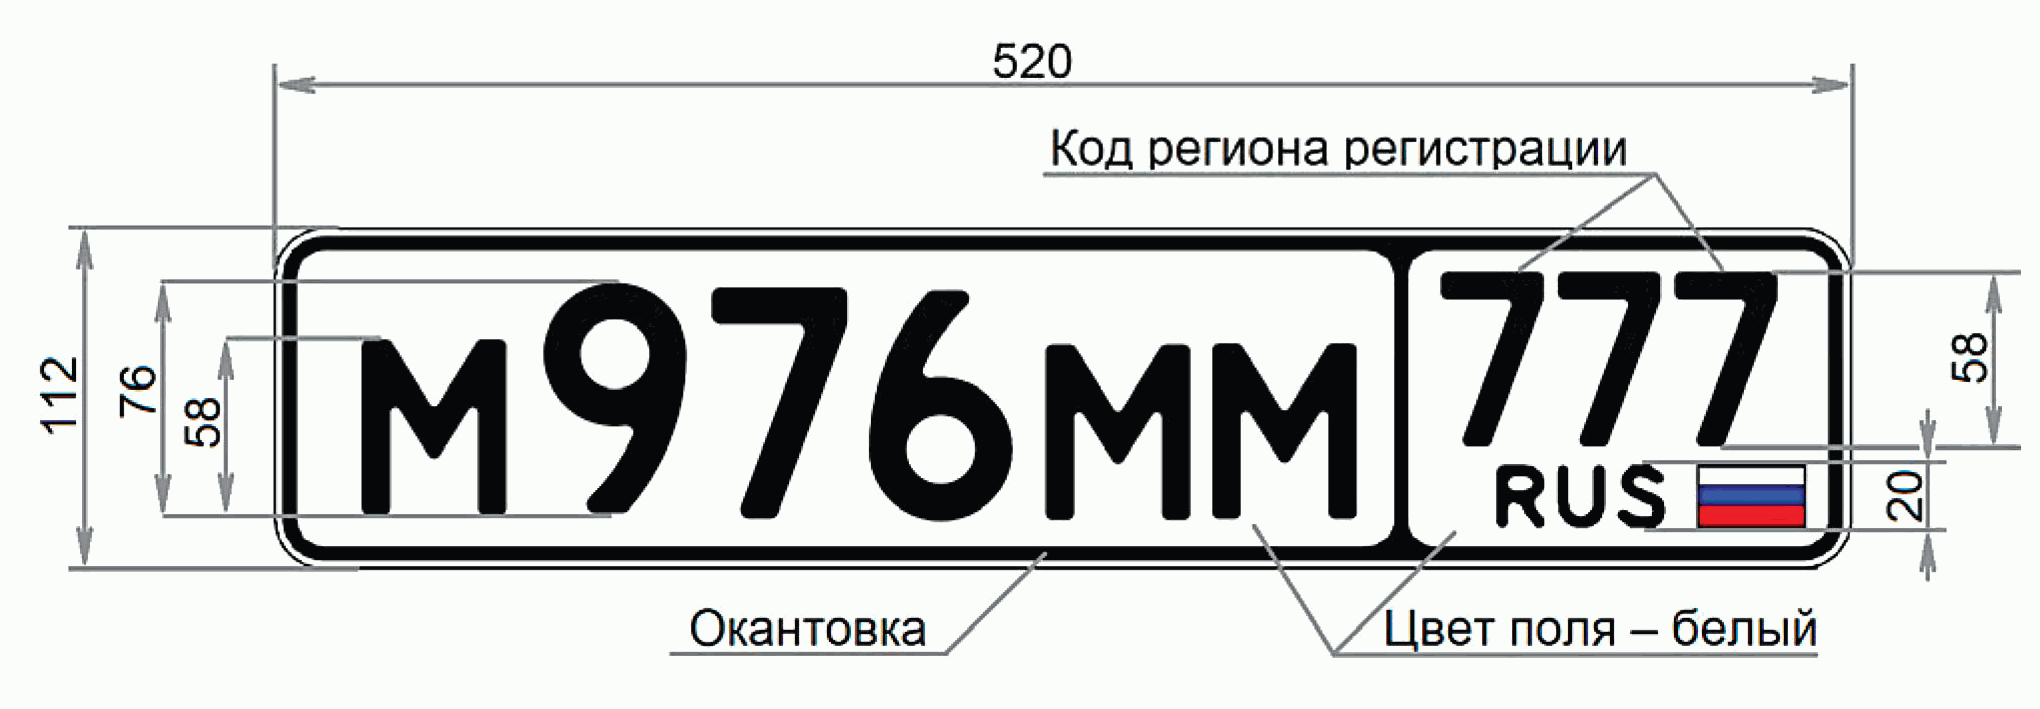 Коды гос номеров автомобилей. Номерной знак в652сх09. Стандарт автомобильных номеров РФ. Госномер Тип 1а Размеры. Гос рег номер автомобиля.